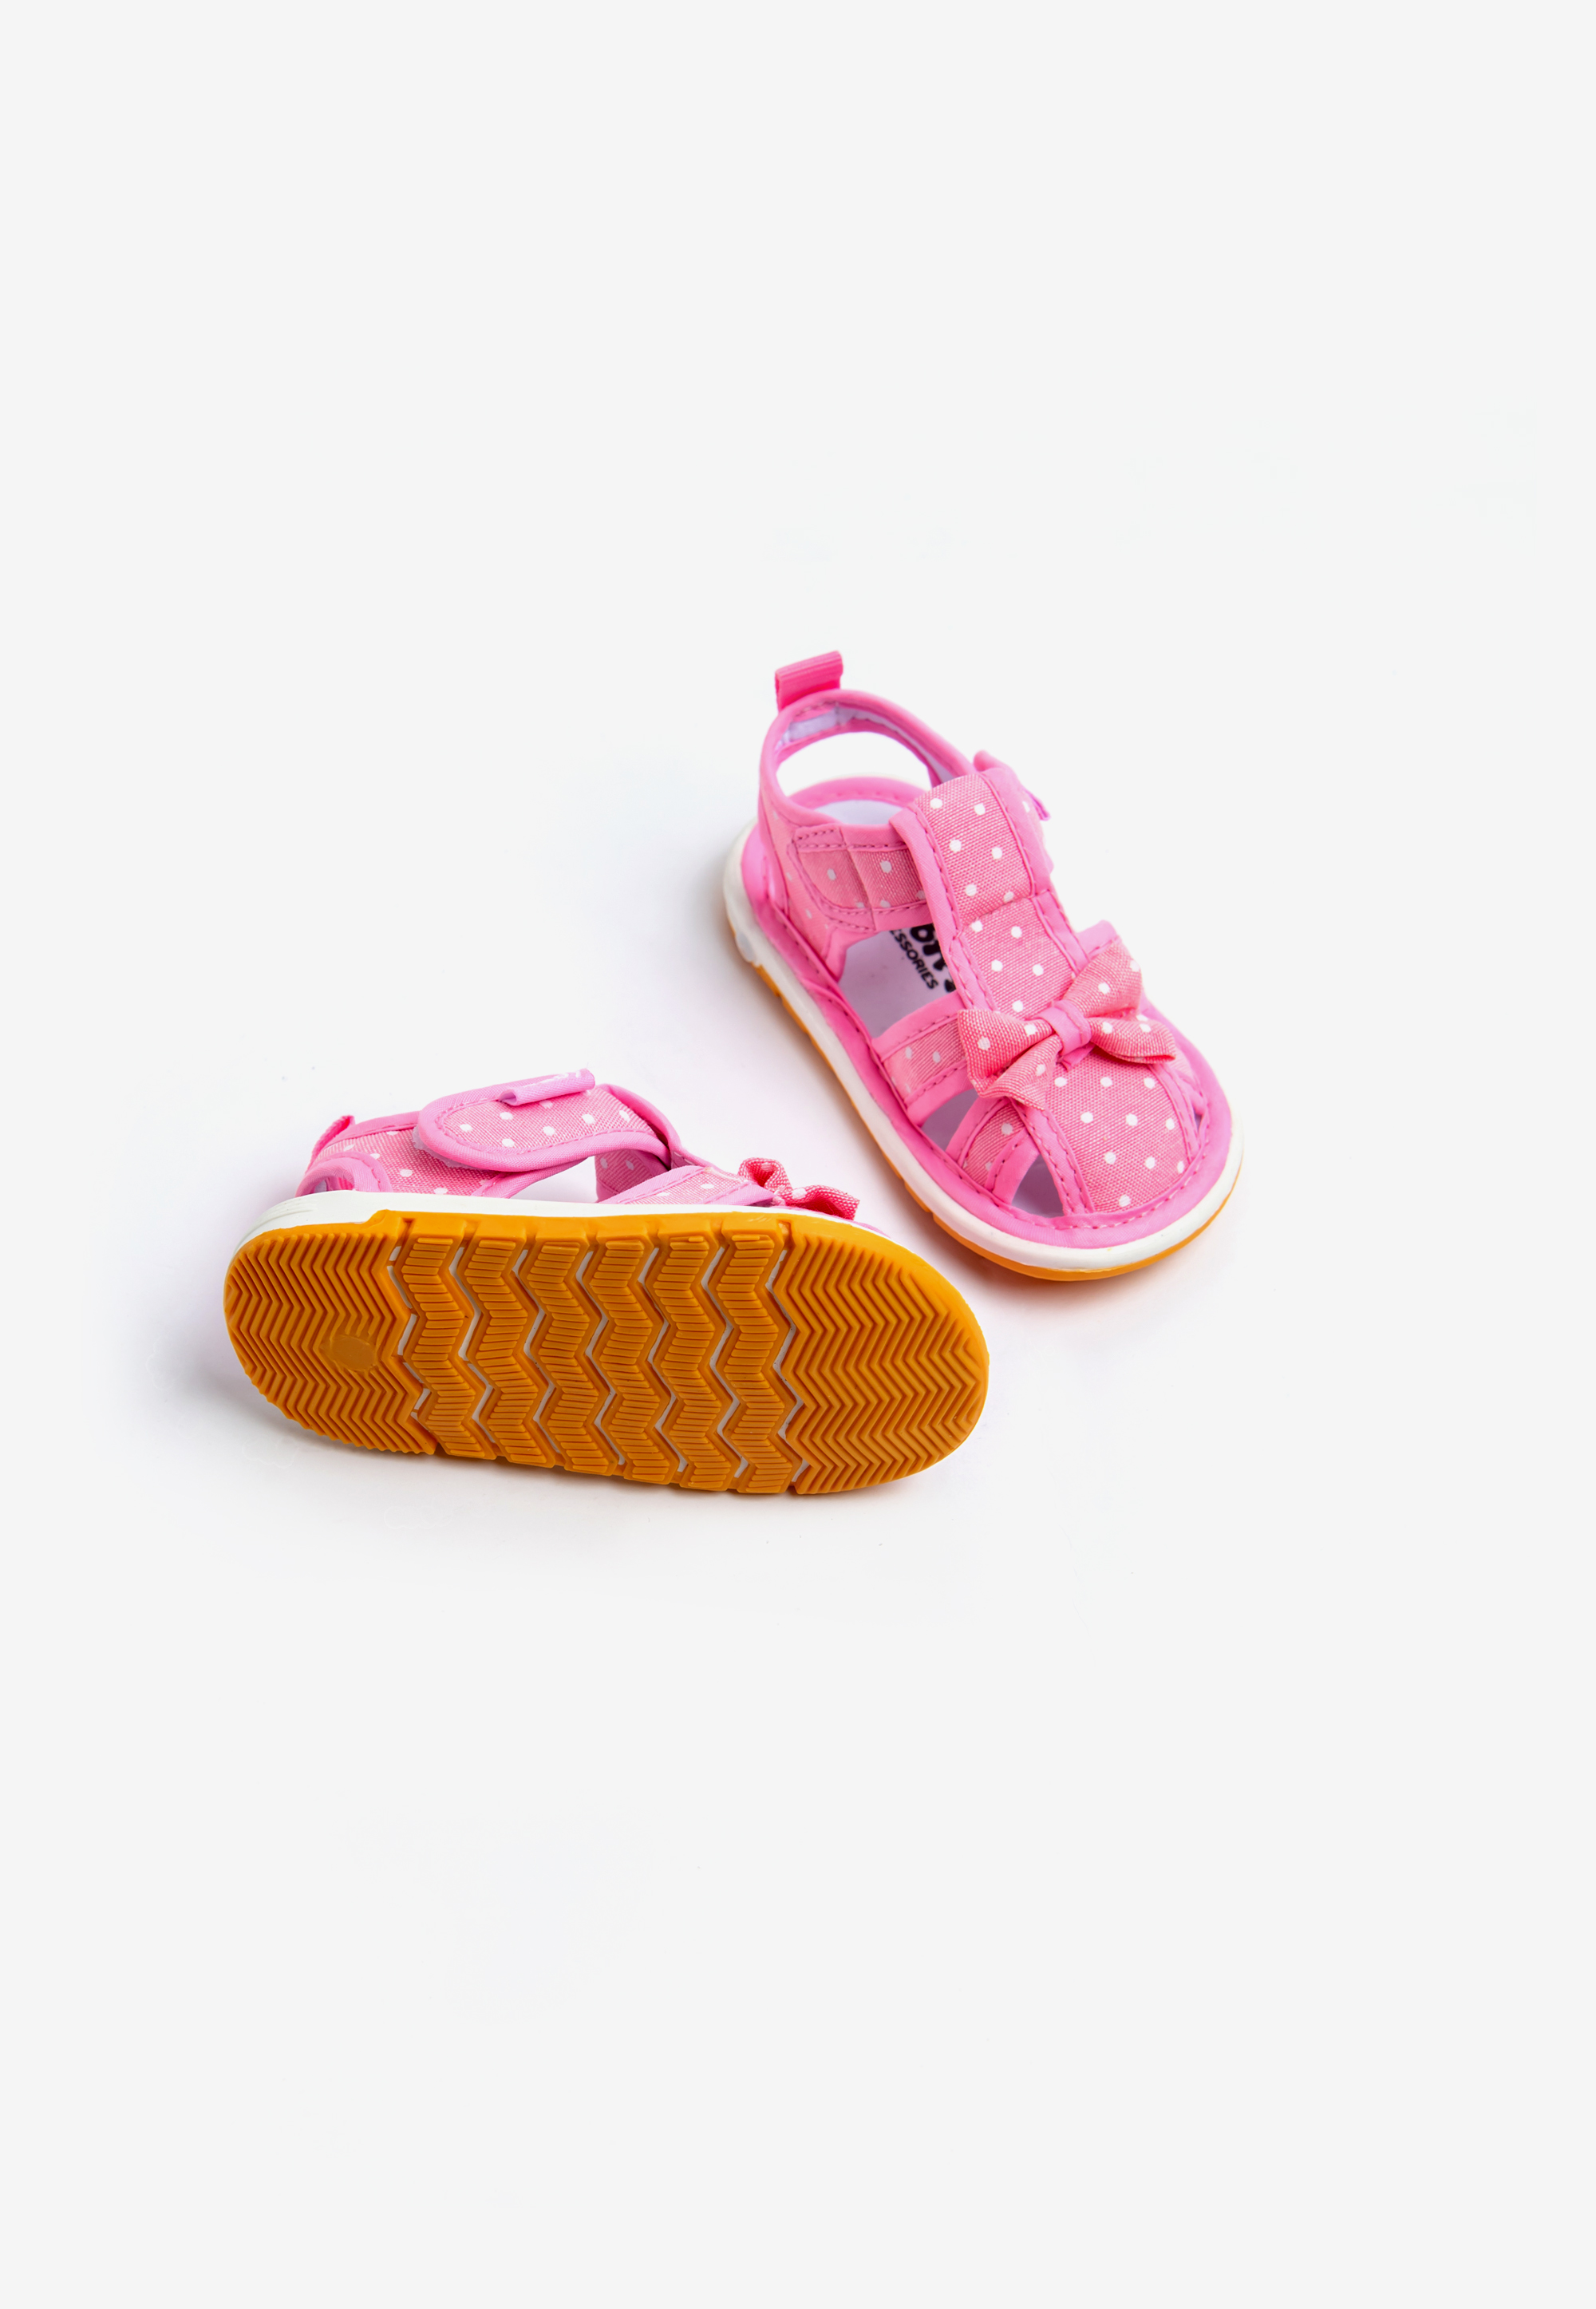 Giày tập đi bé gái giày chống trượt giày bít mũi cho trẻ em dép quai hậu Rabity 20001